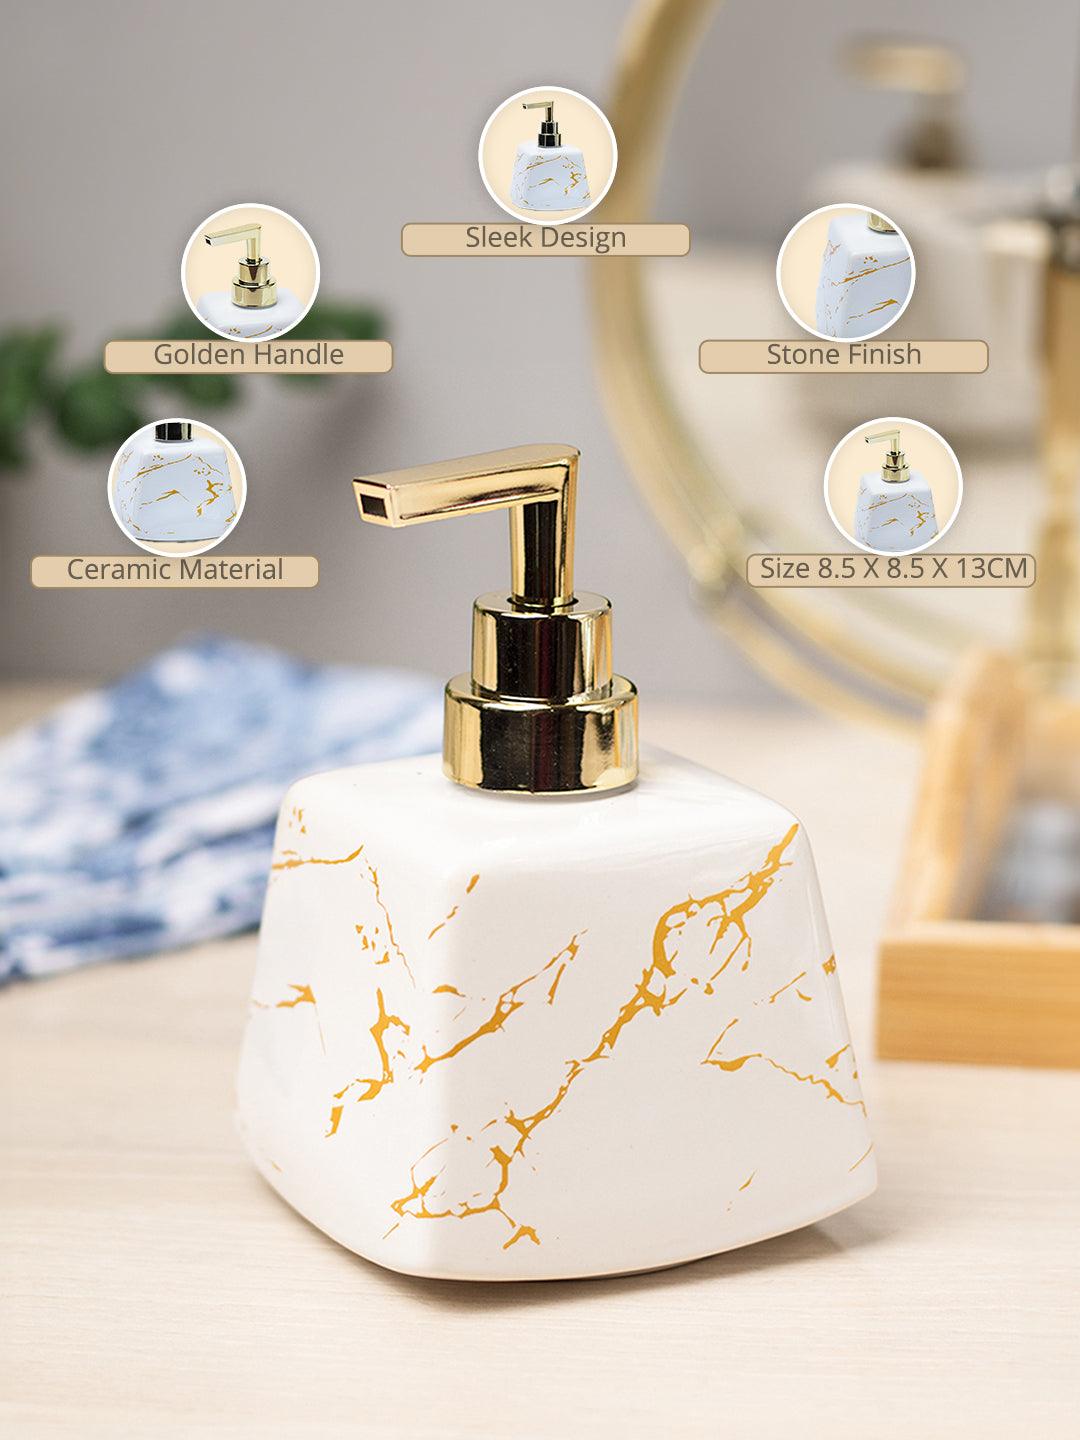 White Ceramic Soap Dispenser - Stone Finish, Bath Accessories